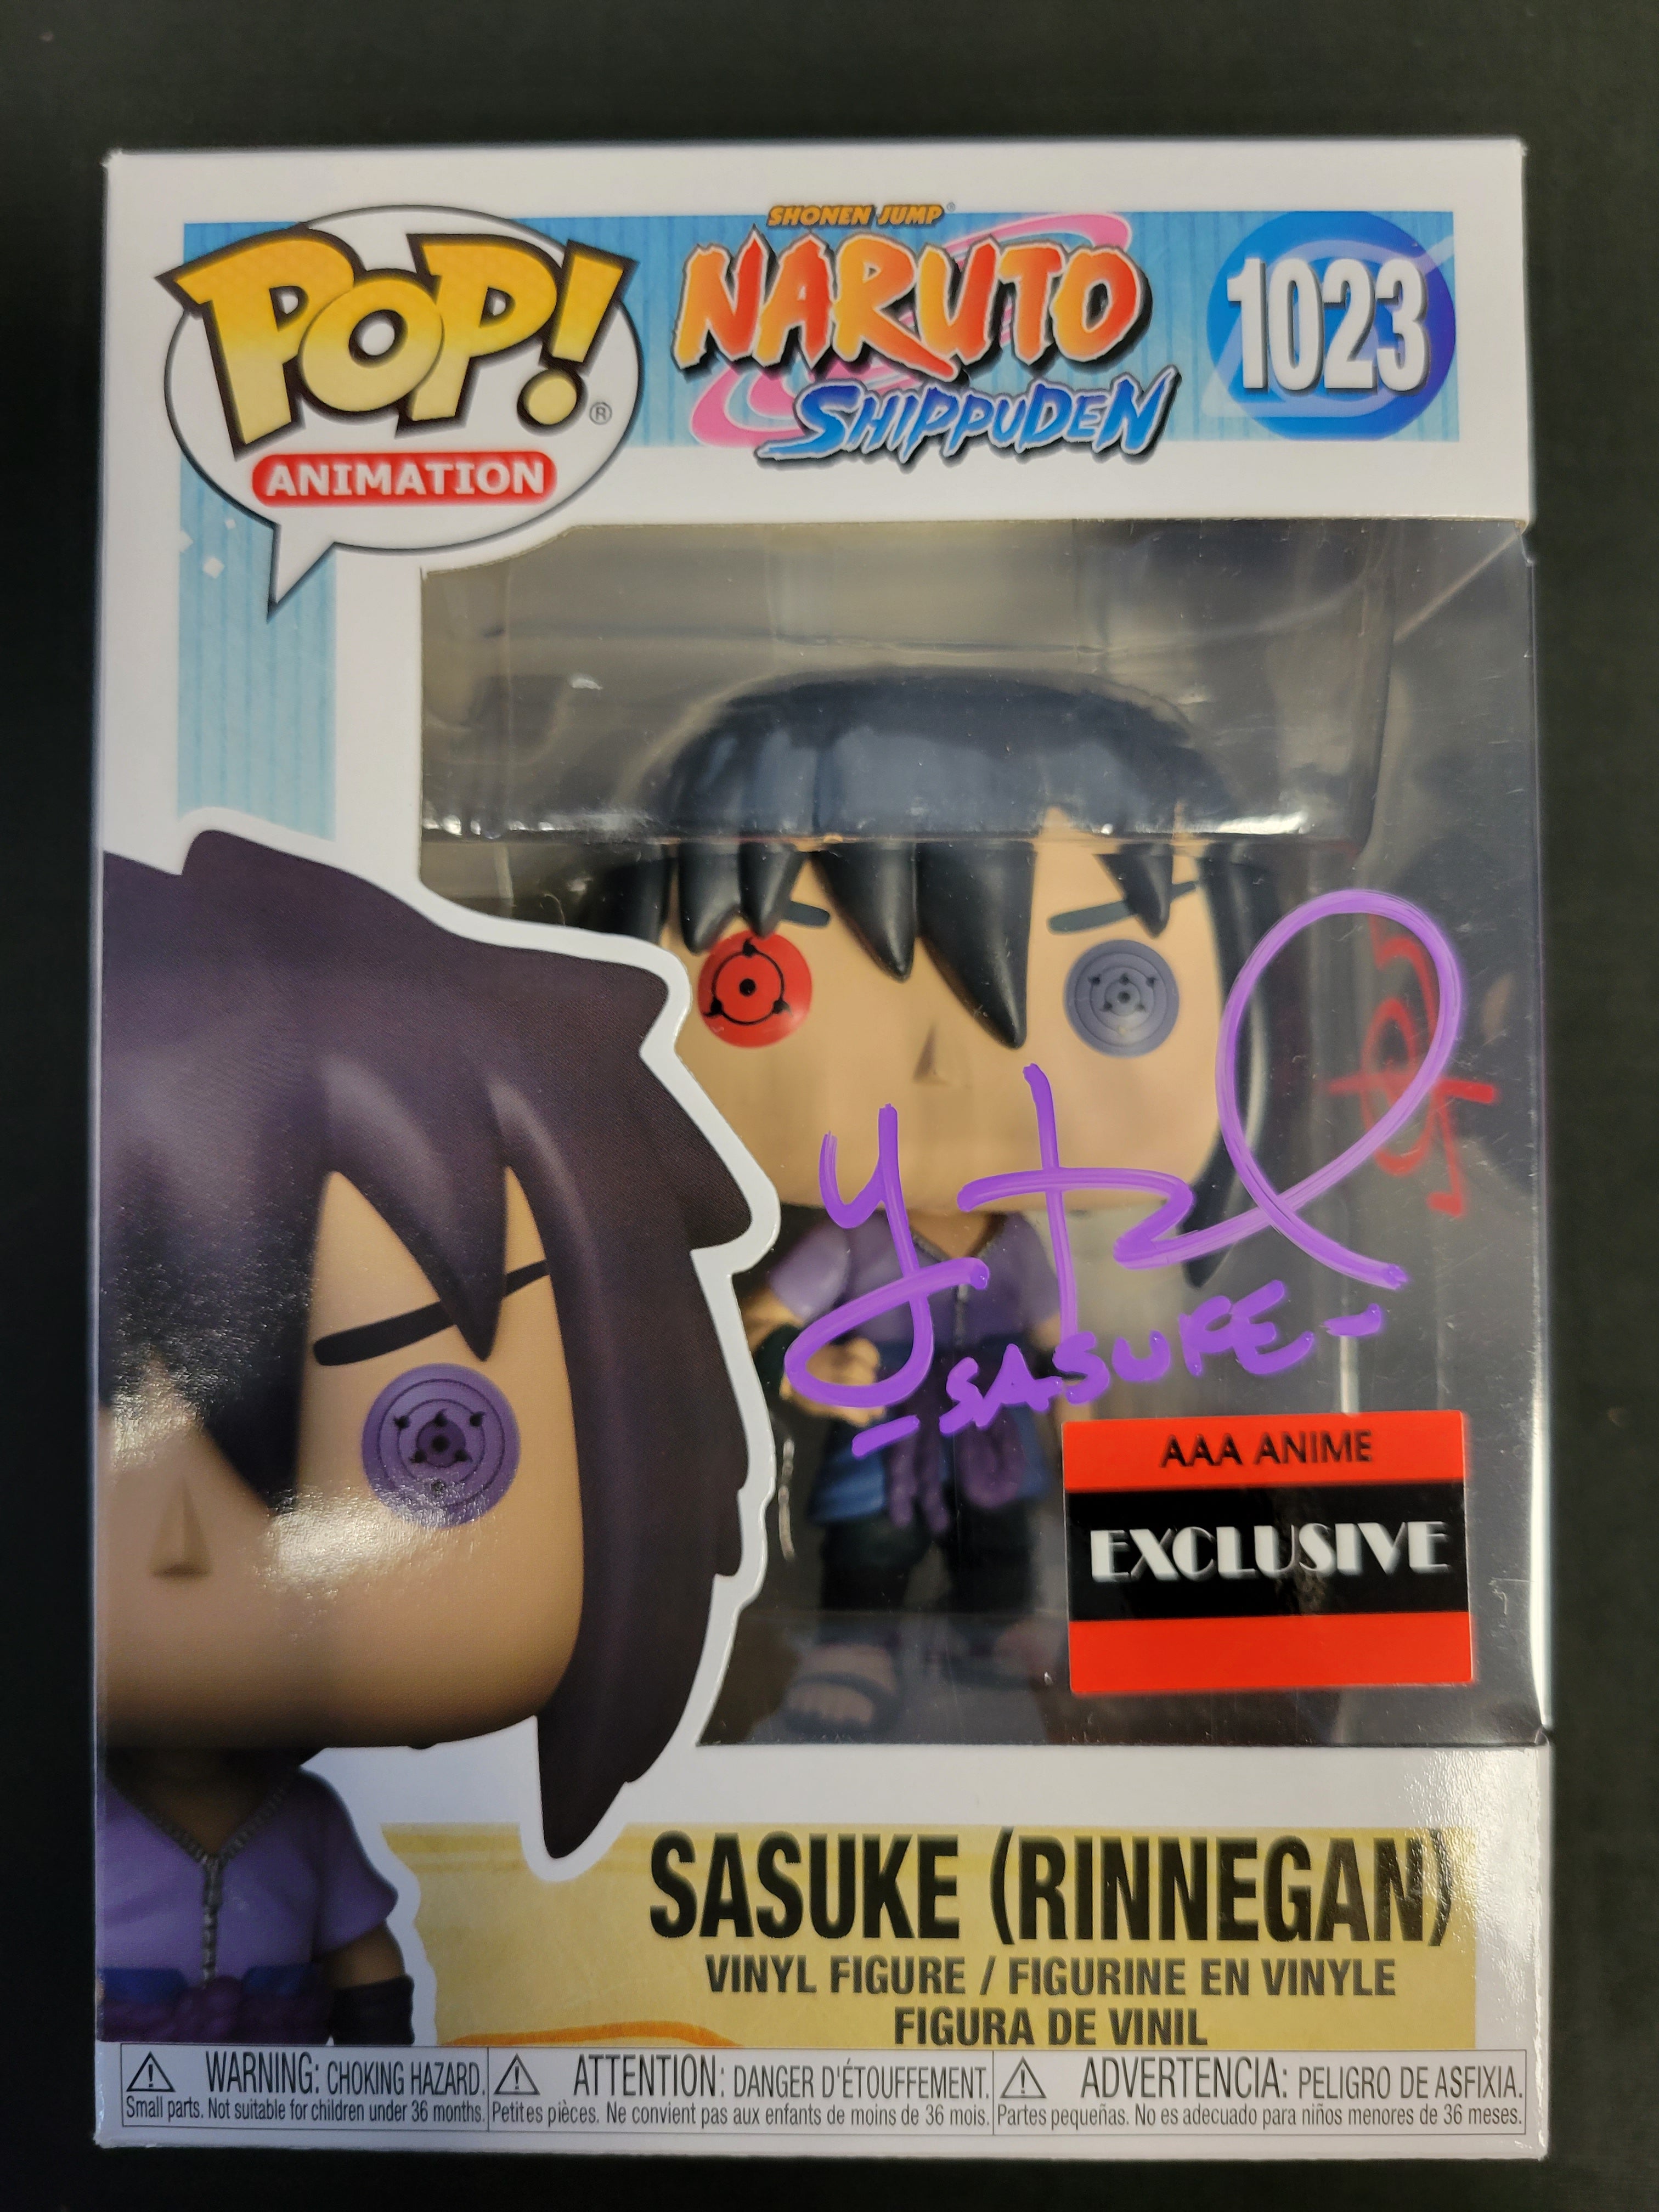 Link in Image Caption] Naruto Sasuke Uchiha Rinnegan Pop! Vinyl